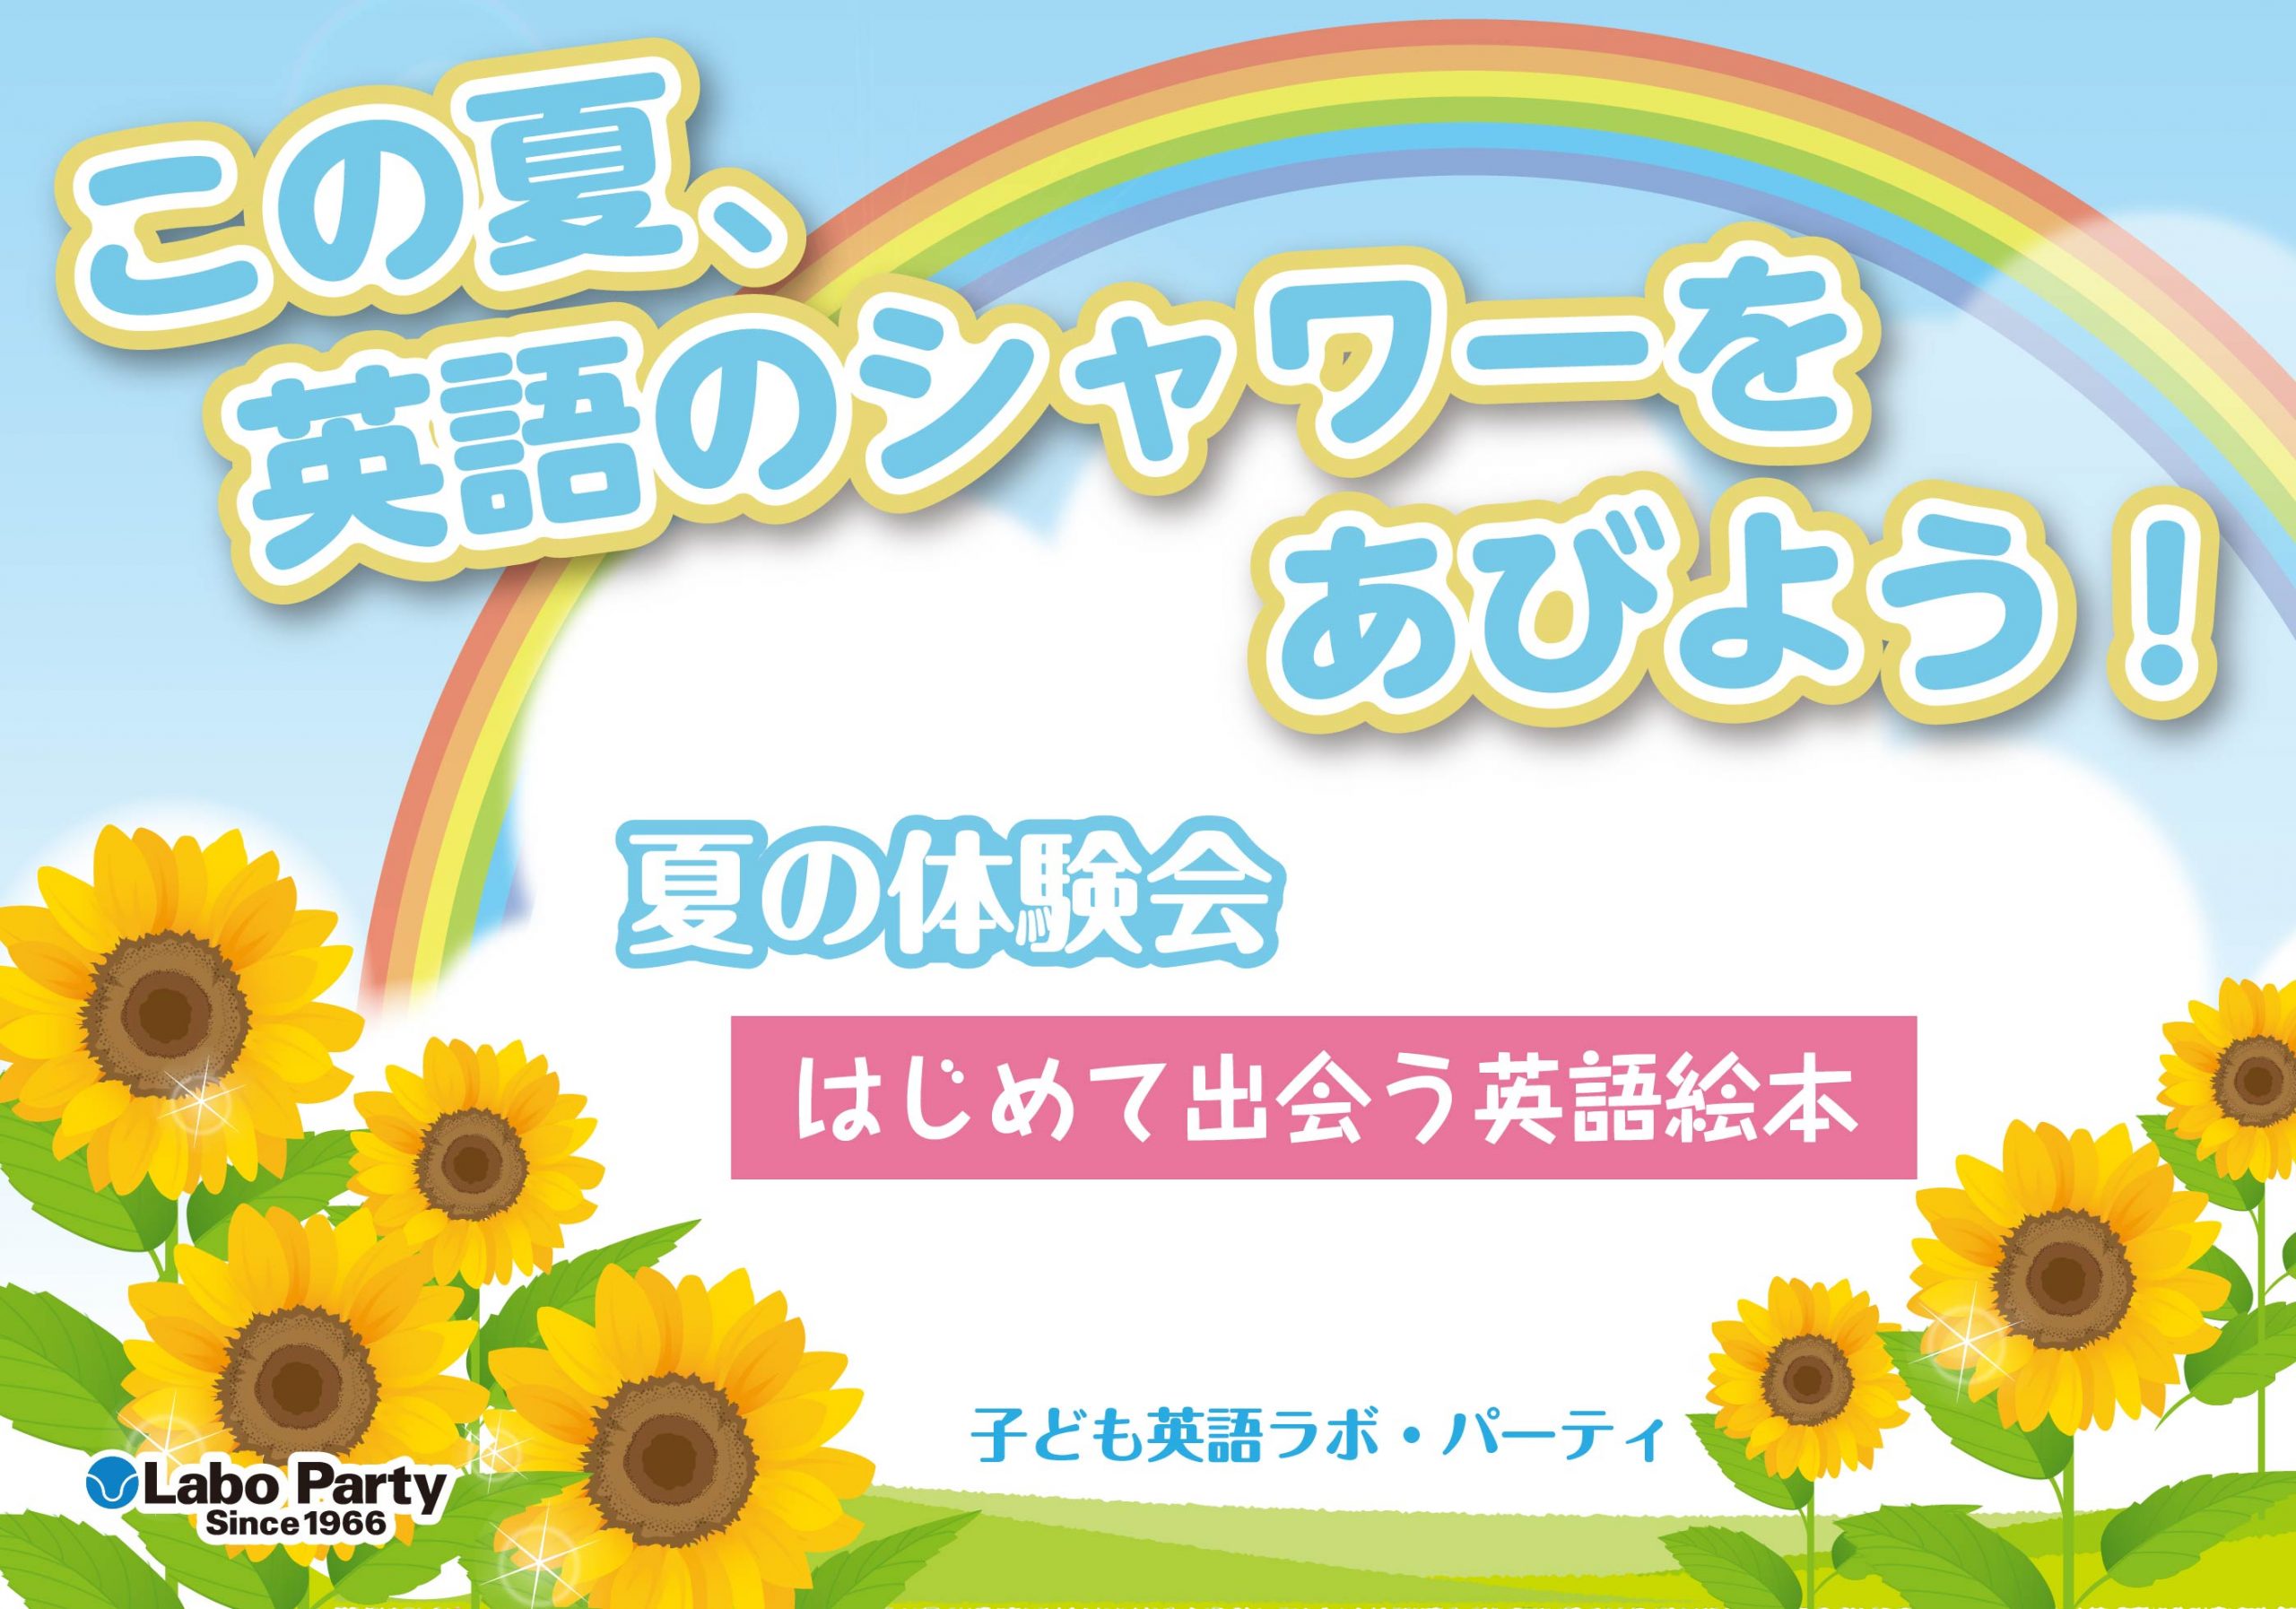 ラボ・パーティ 戸田市笹目教室(町田パーティ)のこの夏、英語のシャワーをあびよう！